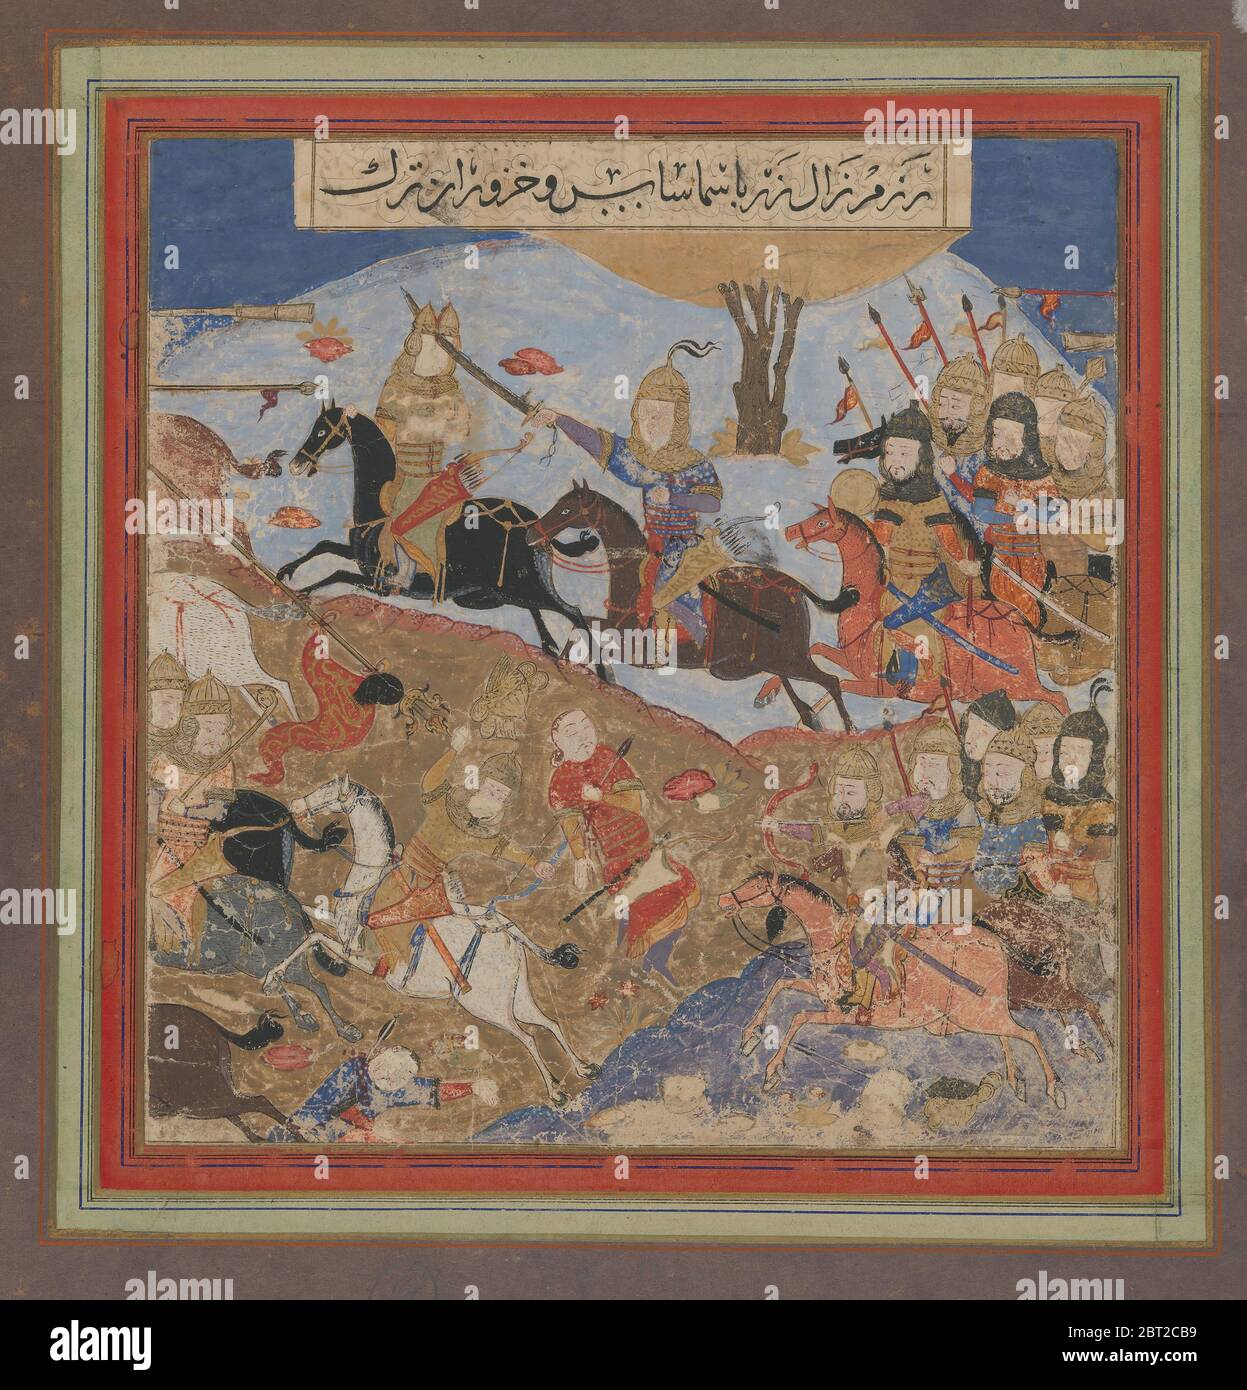 Zal Slays Khazarvan and Puts Shamasas to Flight, Folio from a Shahnama (Book of Kings), ca. 1430-40. Stock Photo